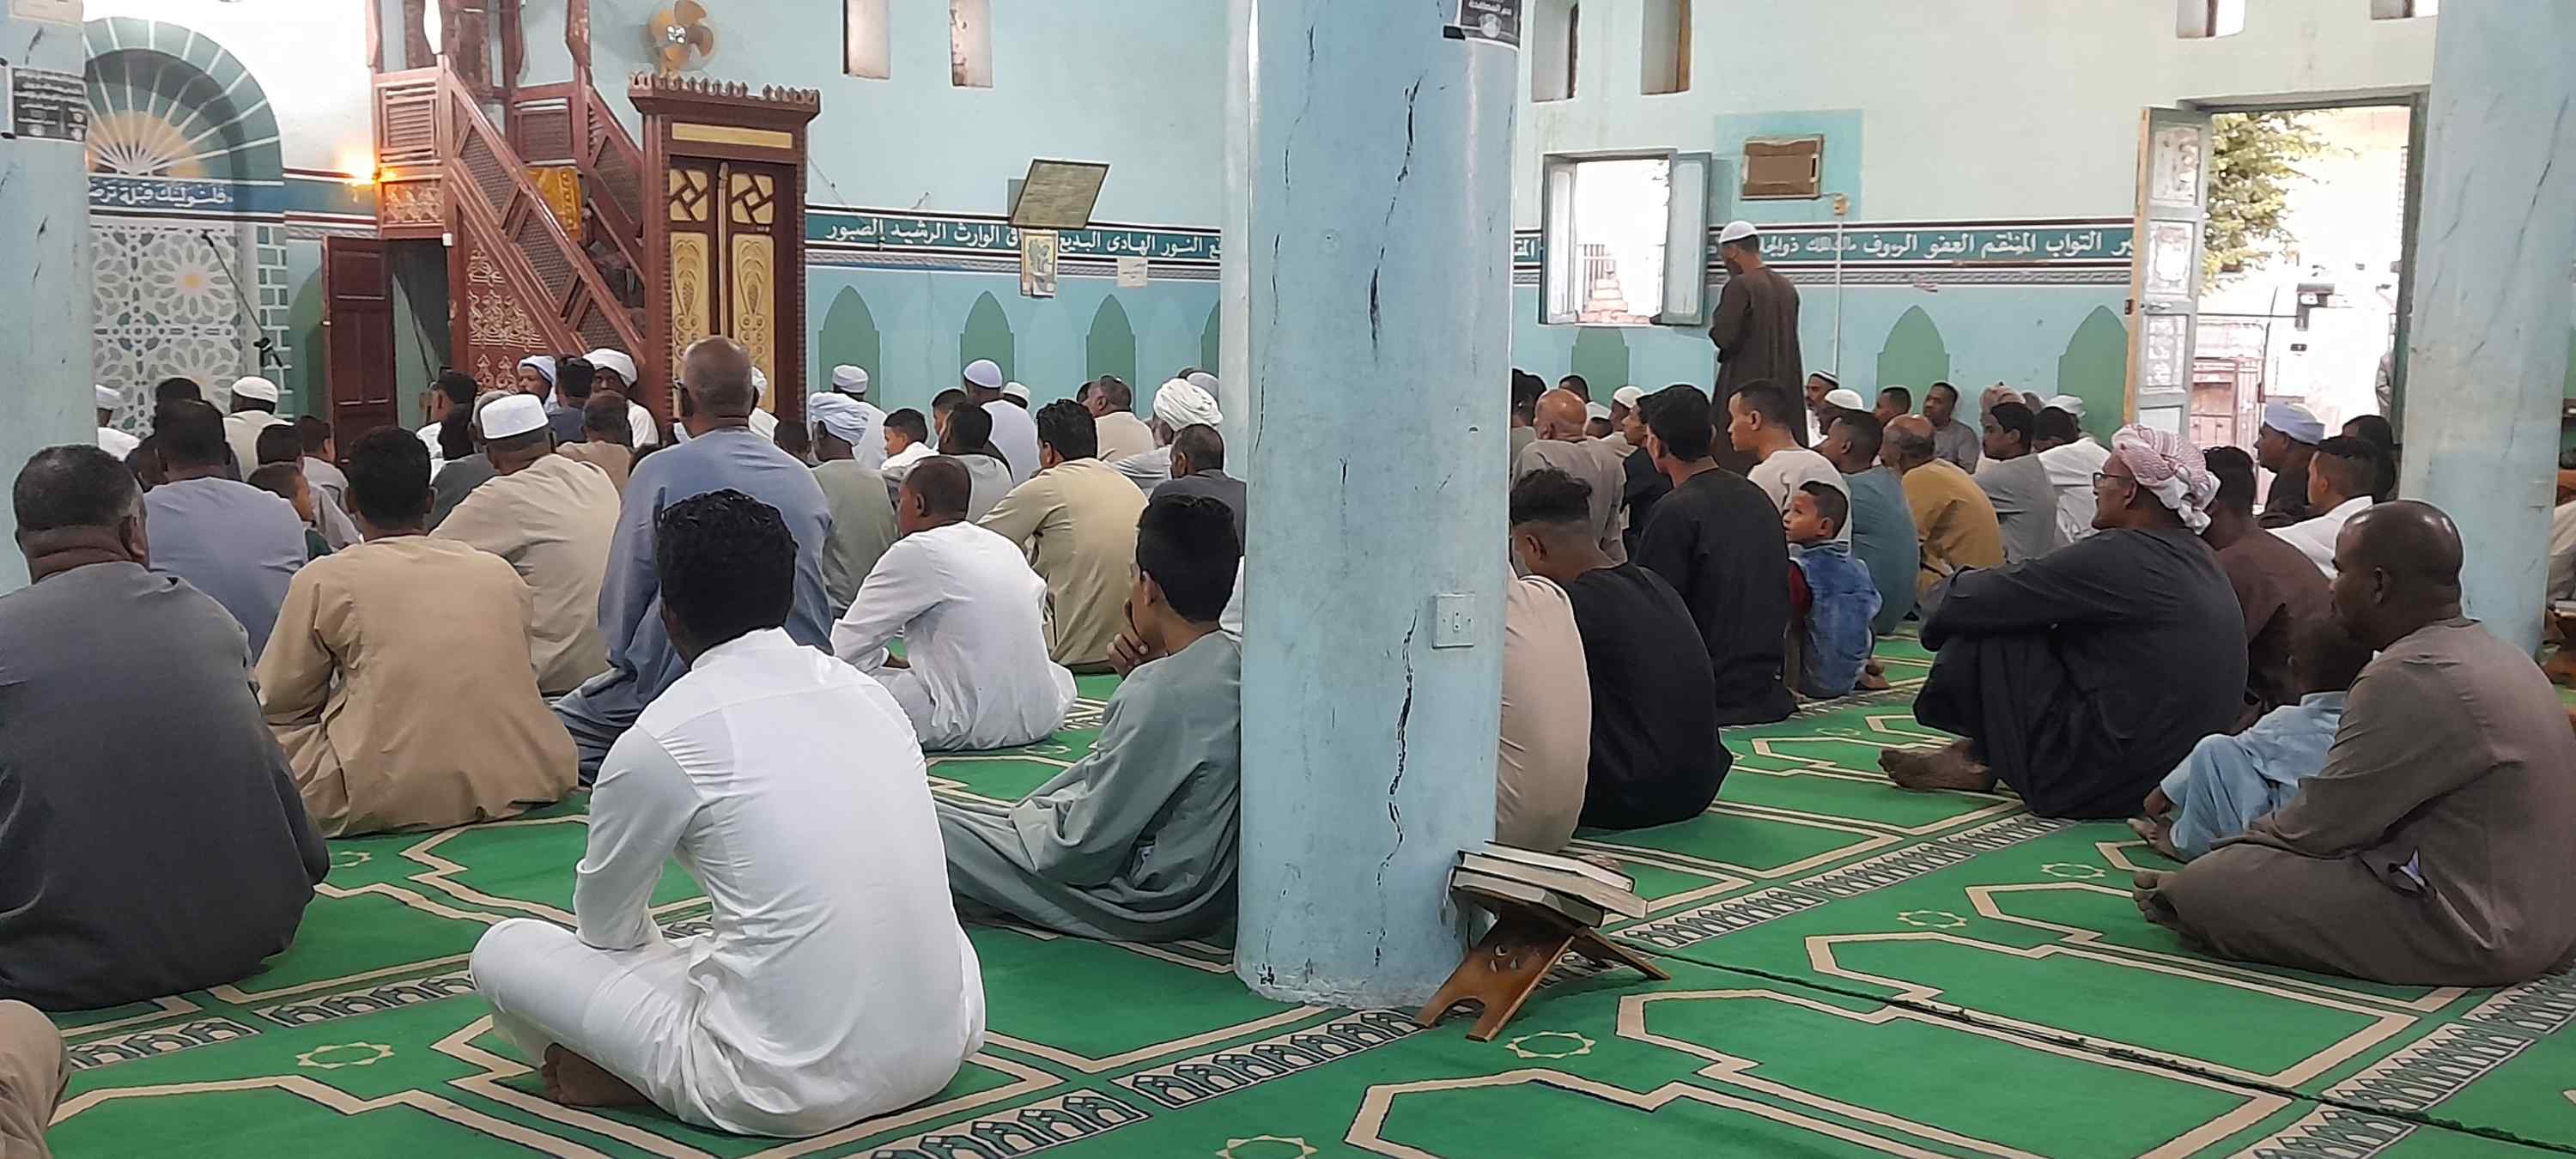 الله أكبر كبيرا.. تكبيرات العيد داخل مساجد أسوان فى عيد الأضحى المبارك (2)